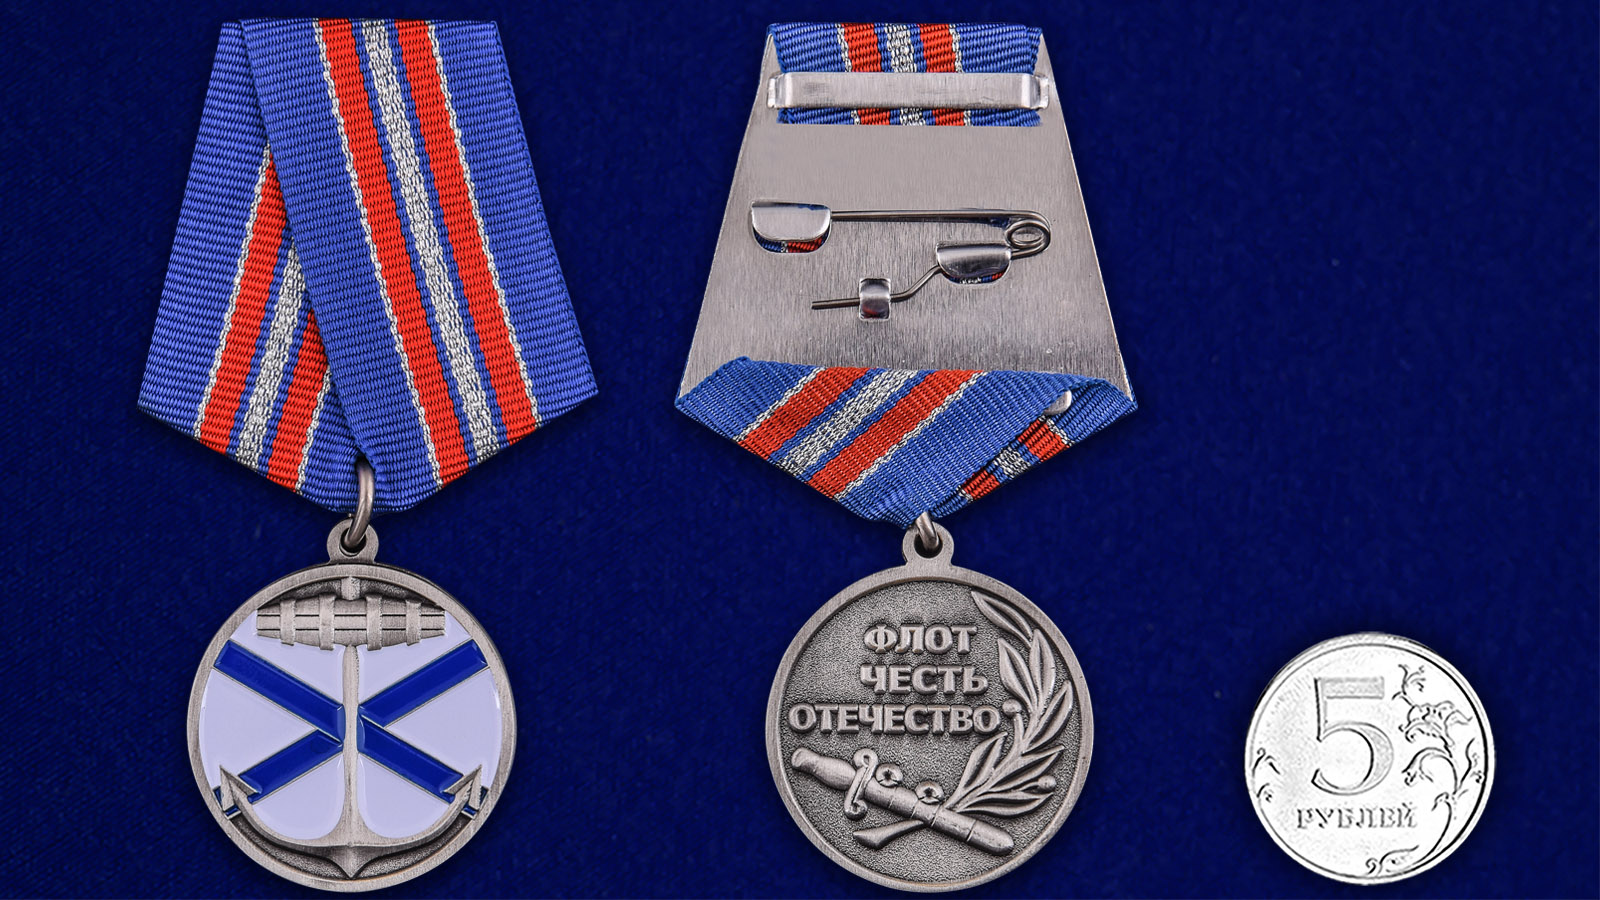 Медаль "Андреевский флаг" 